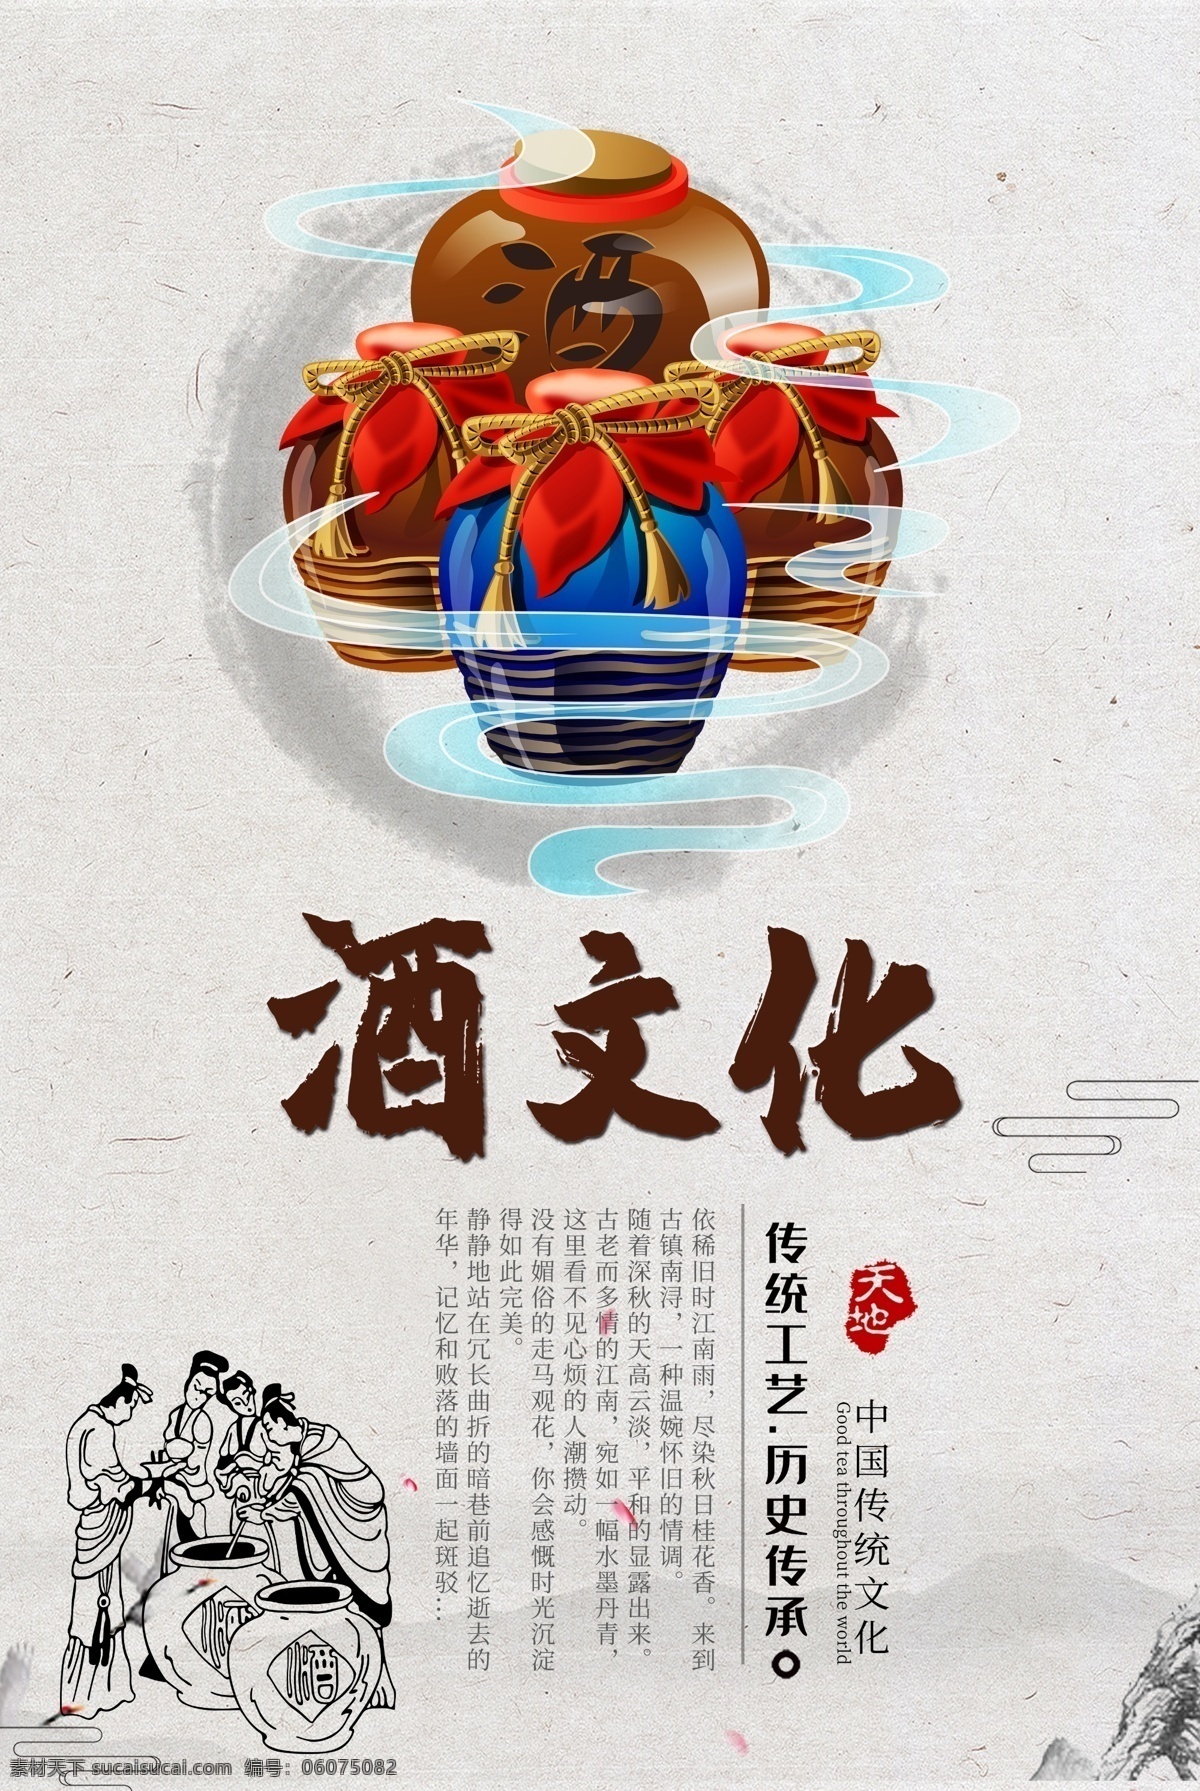 中国 酒文化 海报 酒 陈酒 老酒 传统文化 陈酿老旧 坛子酒 中华文化 白酒 酿酒 藏酒 分层